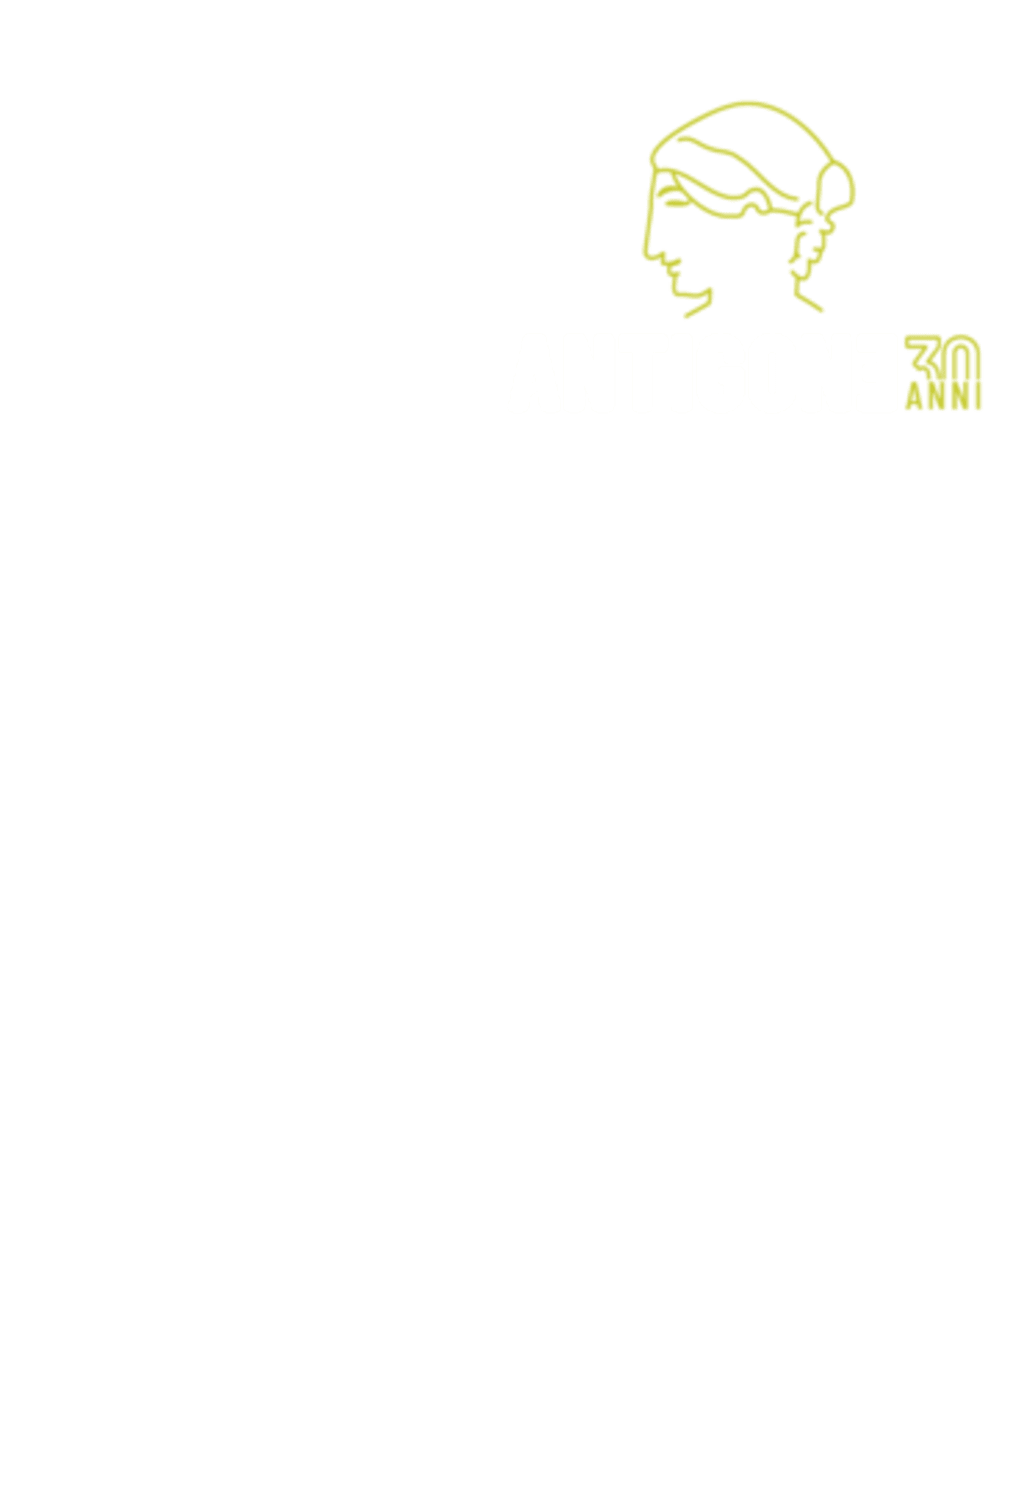 #Antigone30